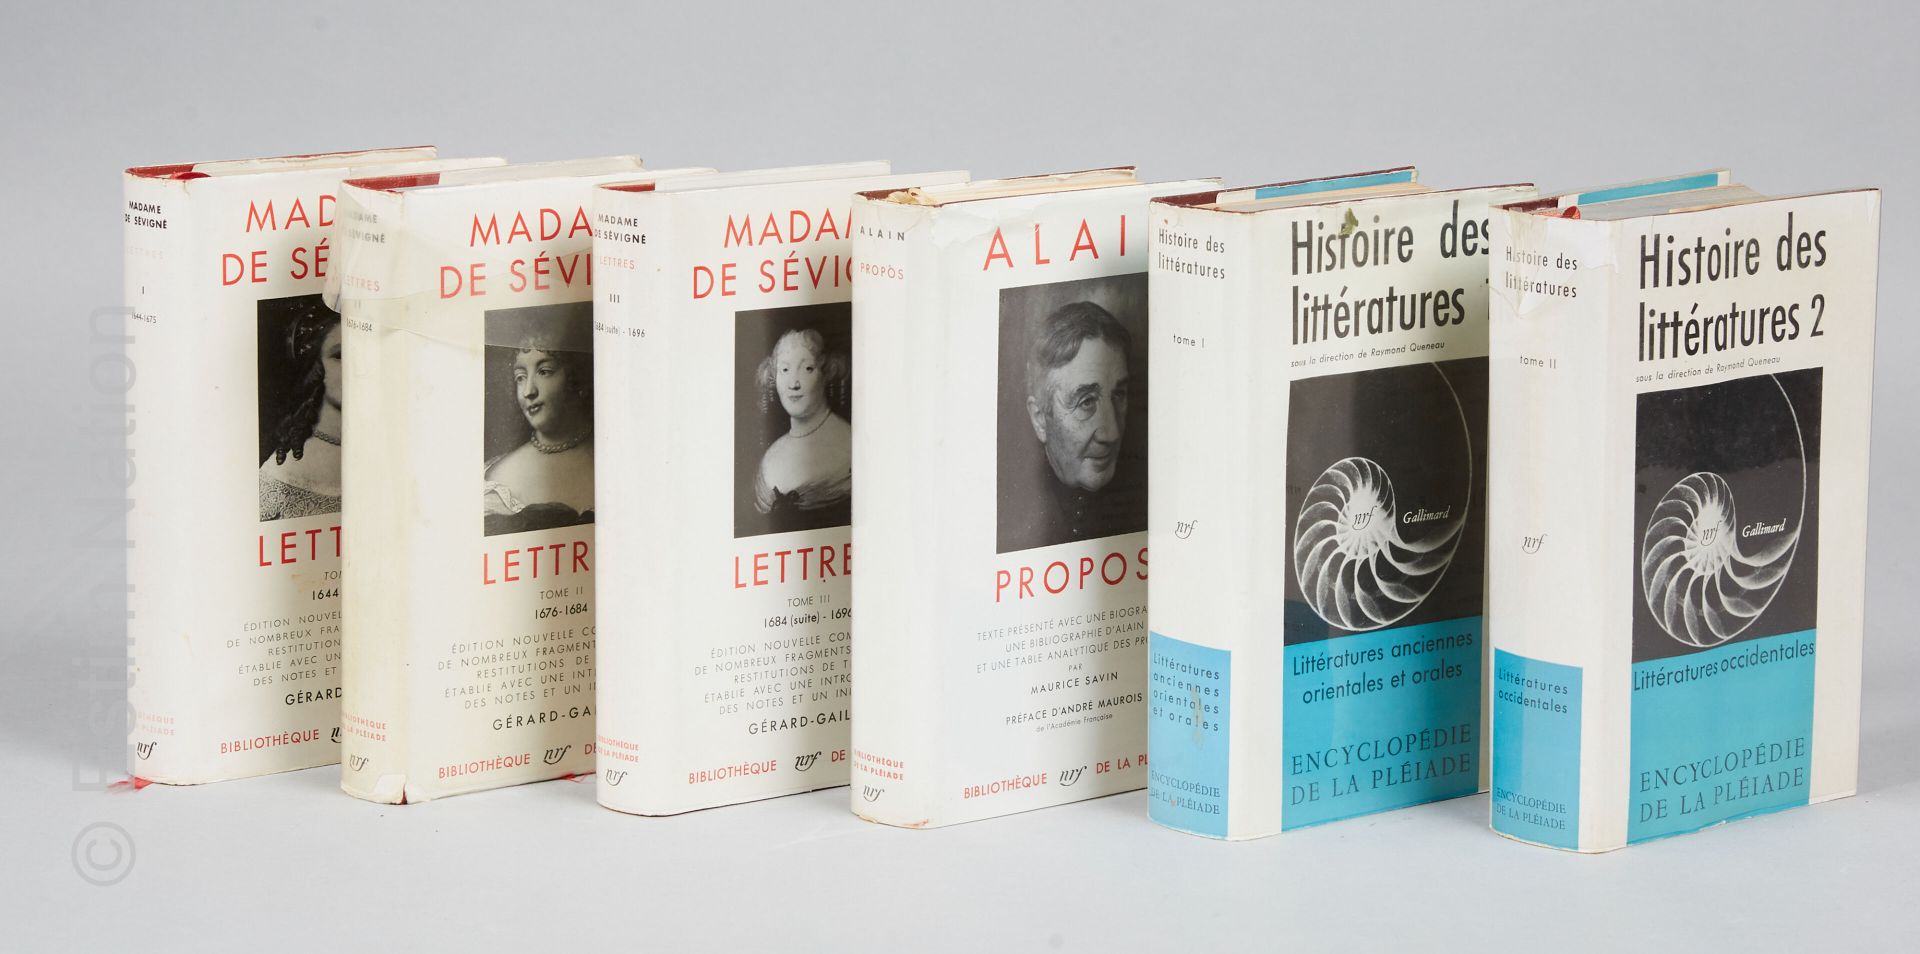 LITTÉRATURE Ensemble de 6 volumes comprenant : 



-MADAME DE SEVIGNE, Lettres, &hellip;